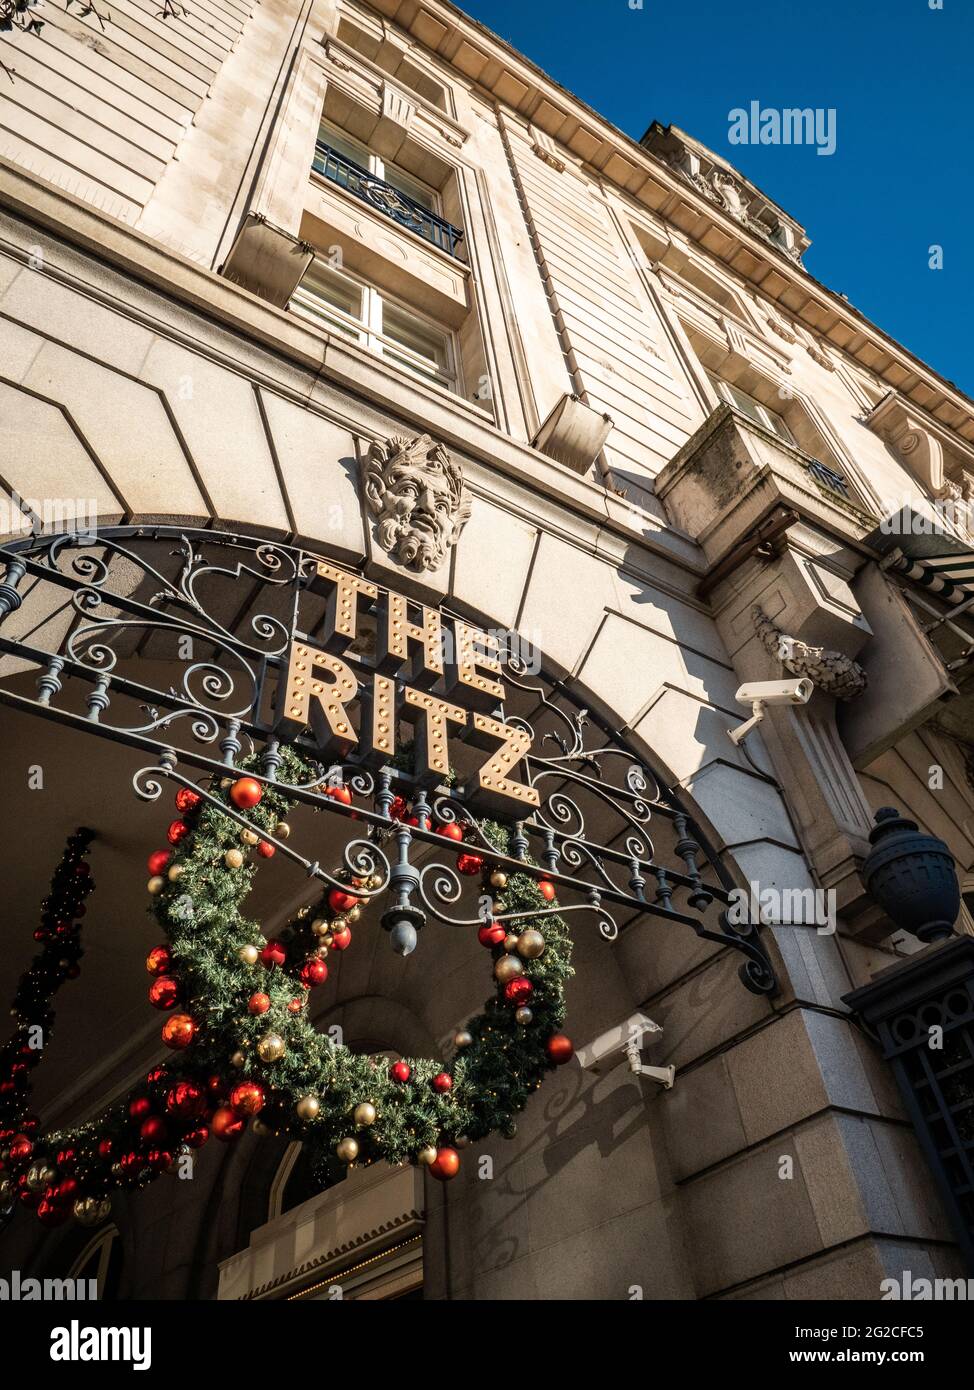 The Ritz Hotel, Mayfair, London. Das ikonische 5-Sterne-Hotel der Kategorie II am Piccadilly, das zu einem Synonym für High Society und Luxus geworden ist. Stockfoto